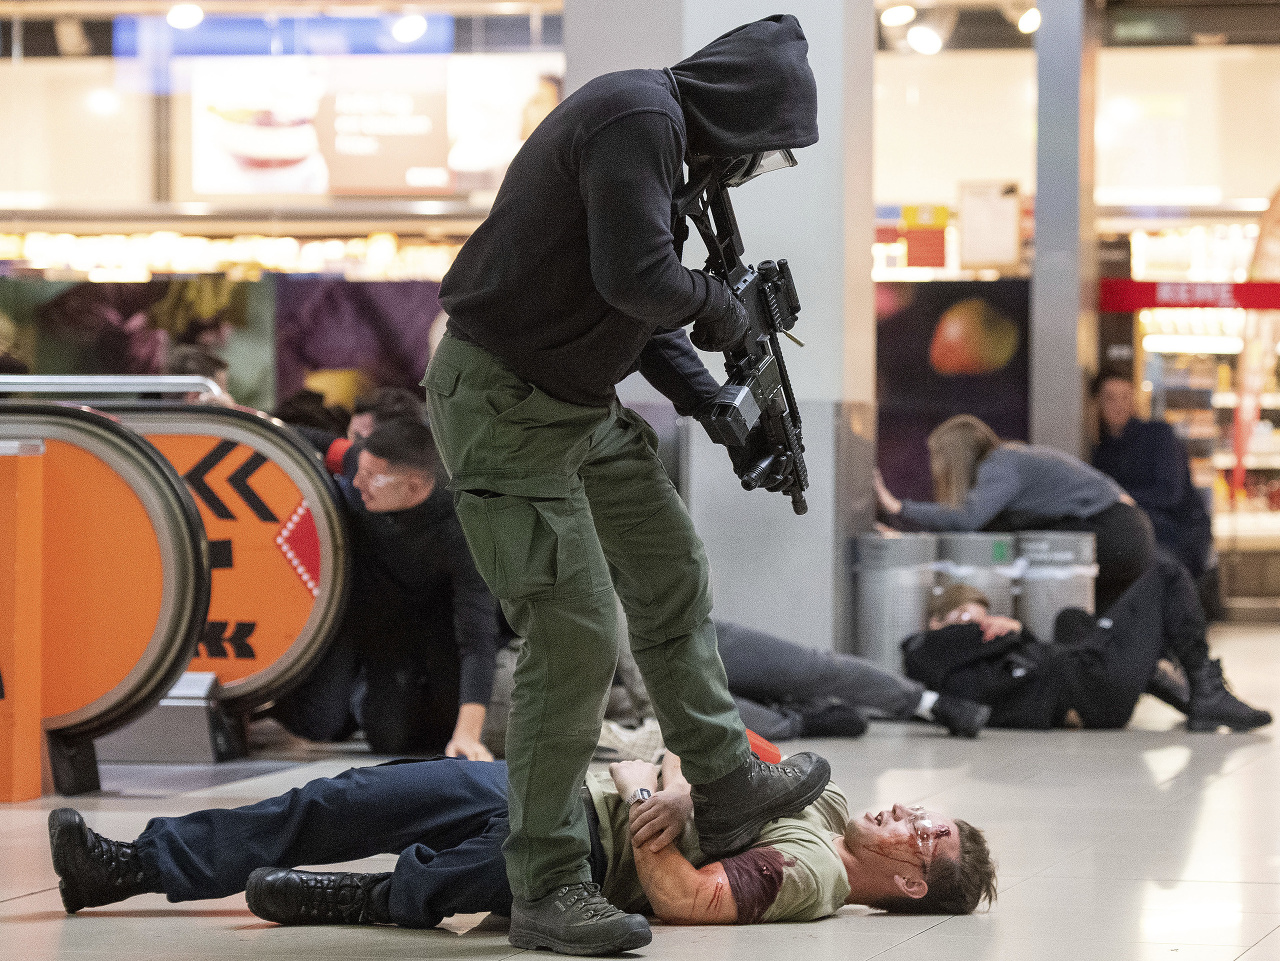 Doposiaľ najrozsiahlejšie protiteroristické cvičenie v priestoroch letiska uskutočnila nemecká polícia v noci na stredu medzi Kolínom nad Rýnom a Bonnom.